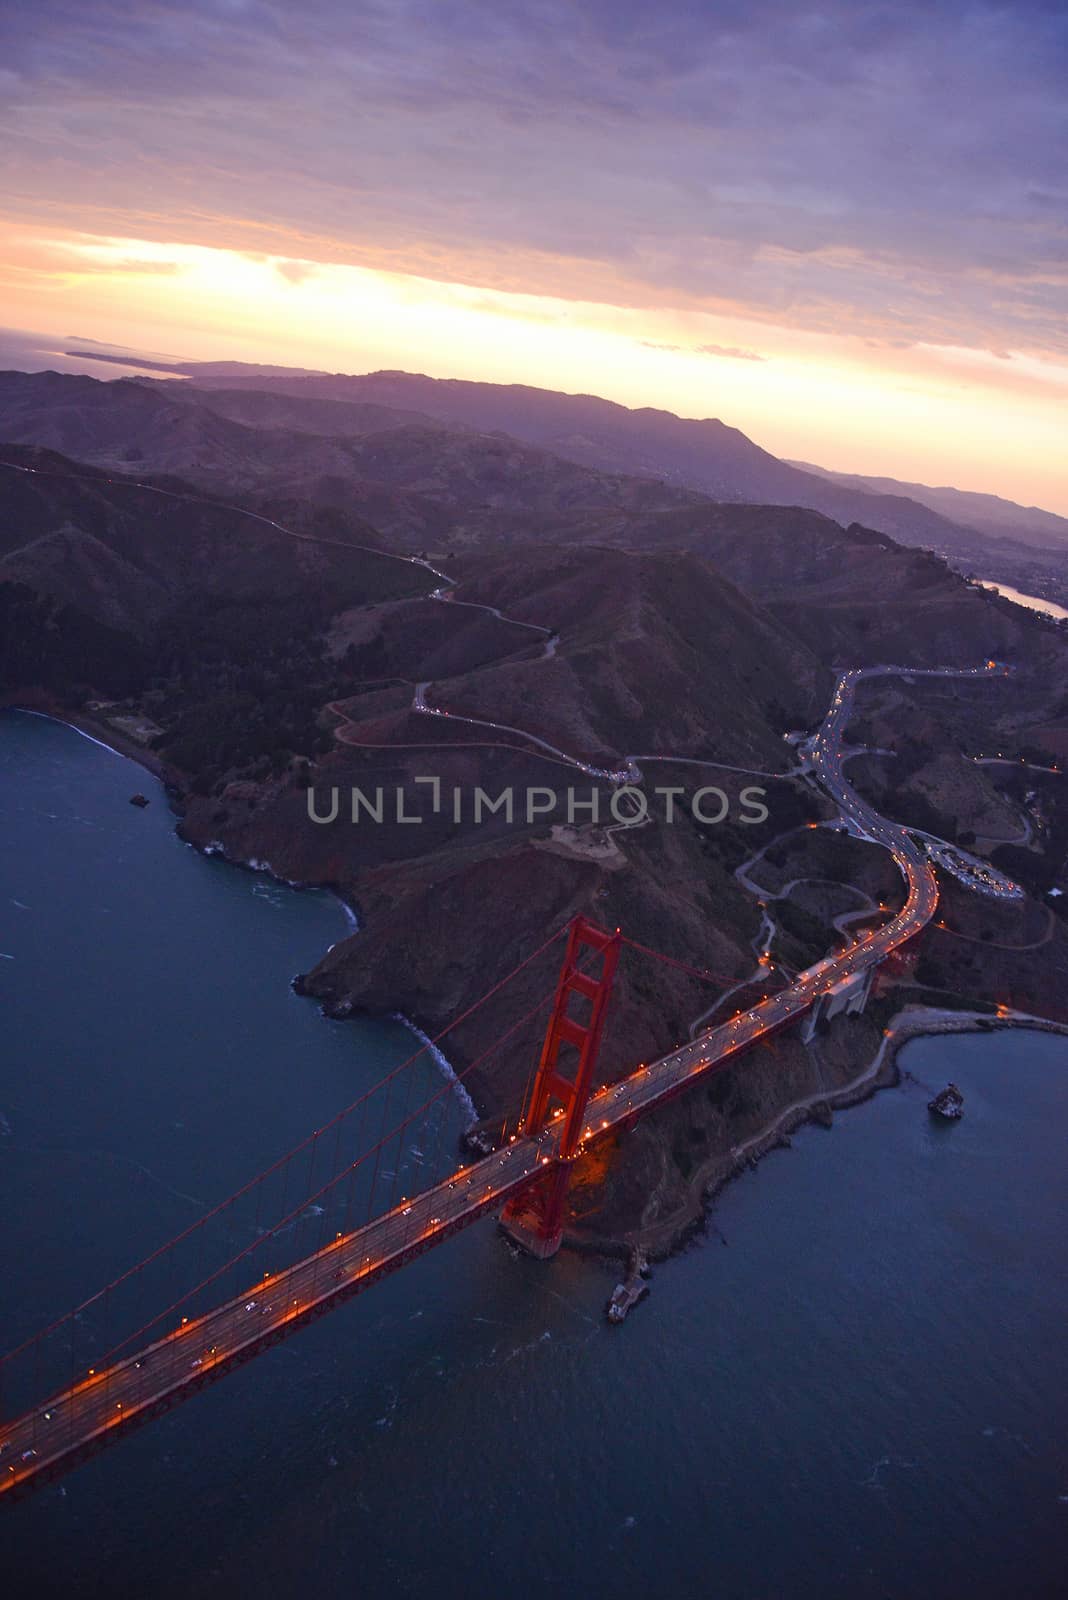 golden gate bridge aerial view by porbital